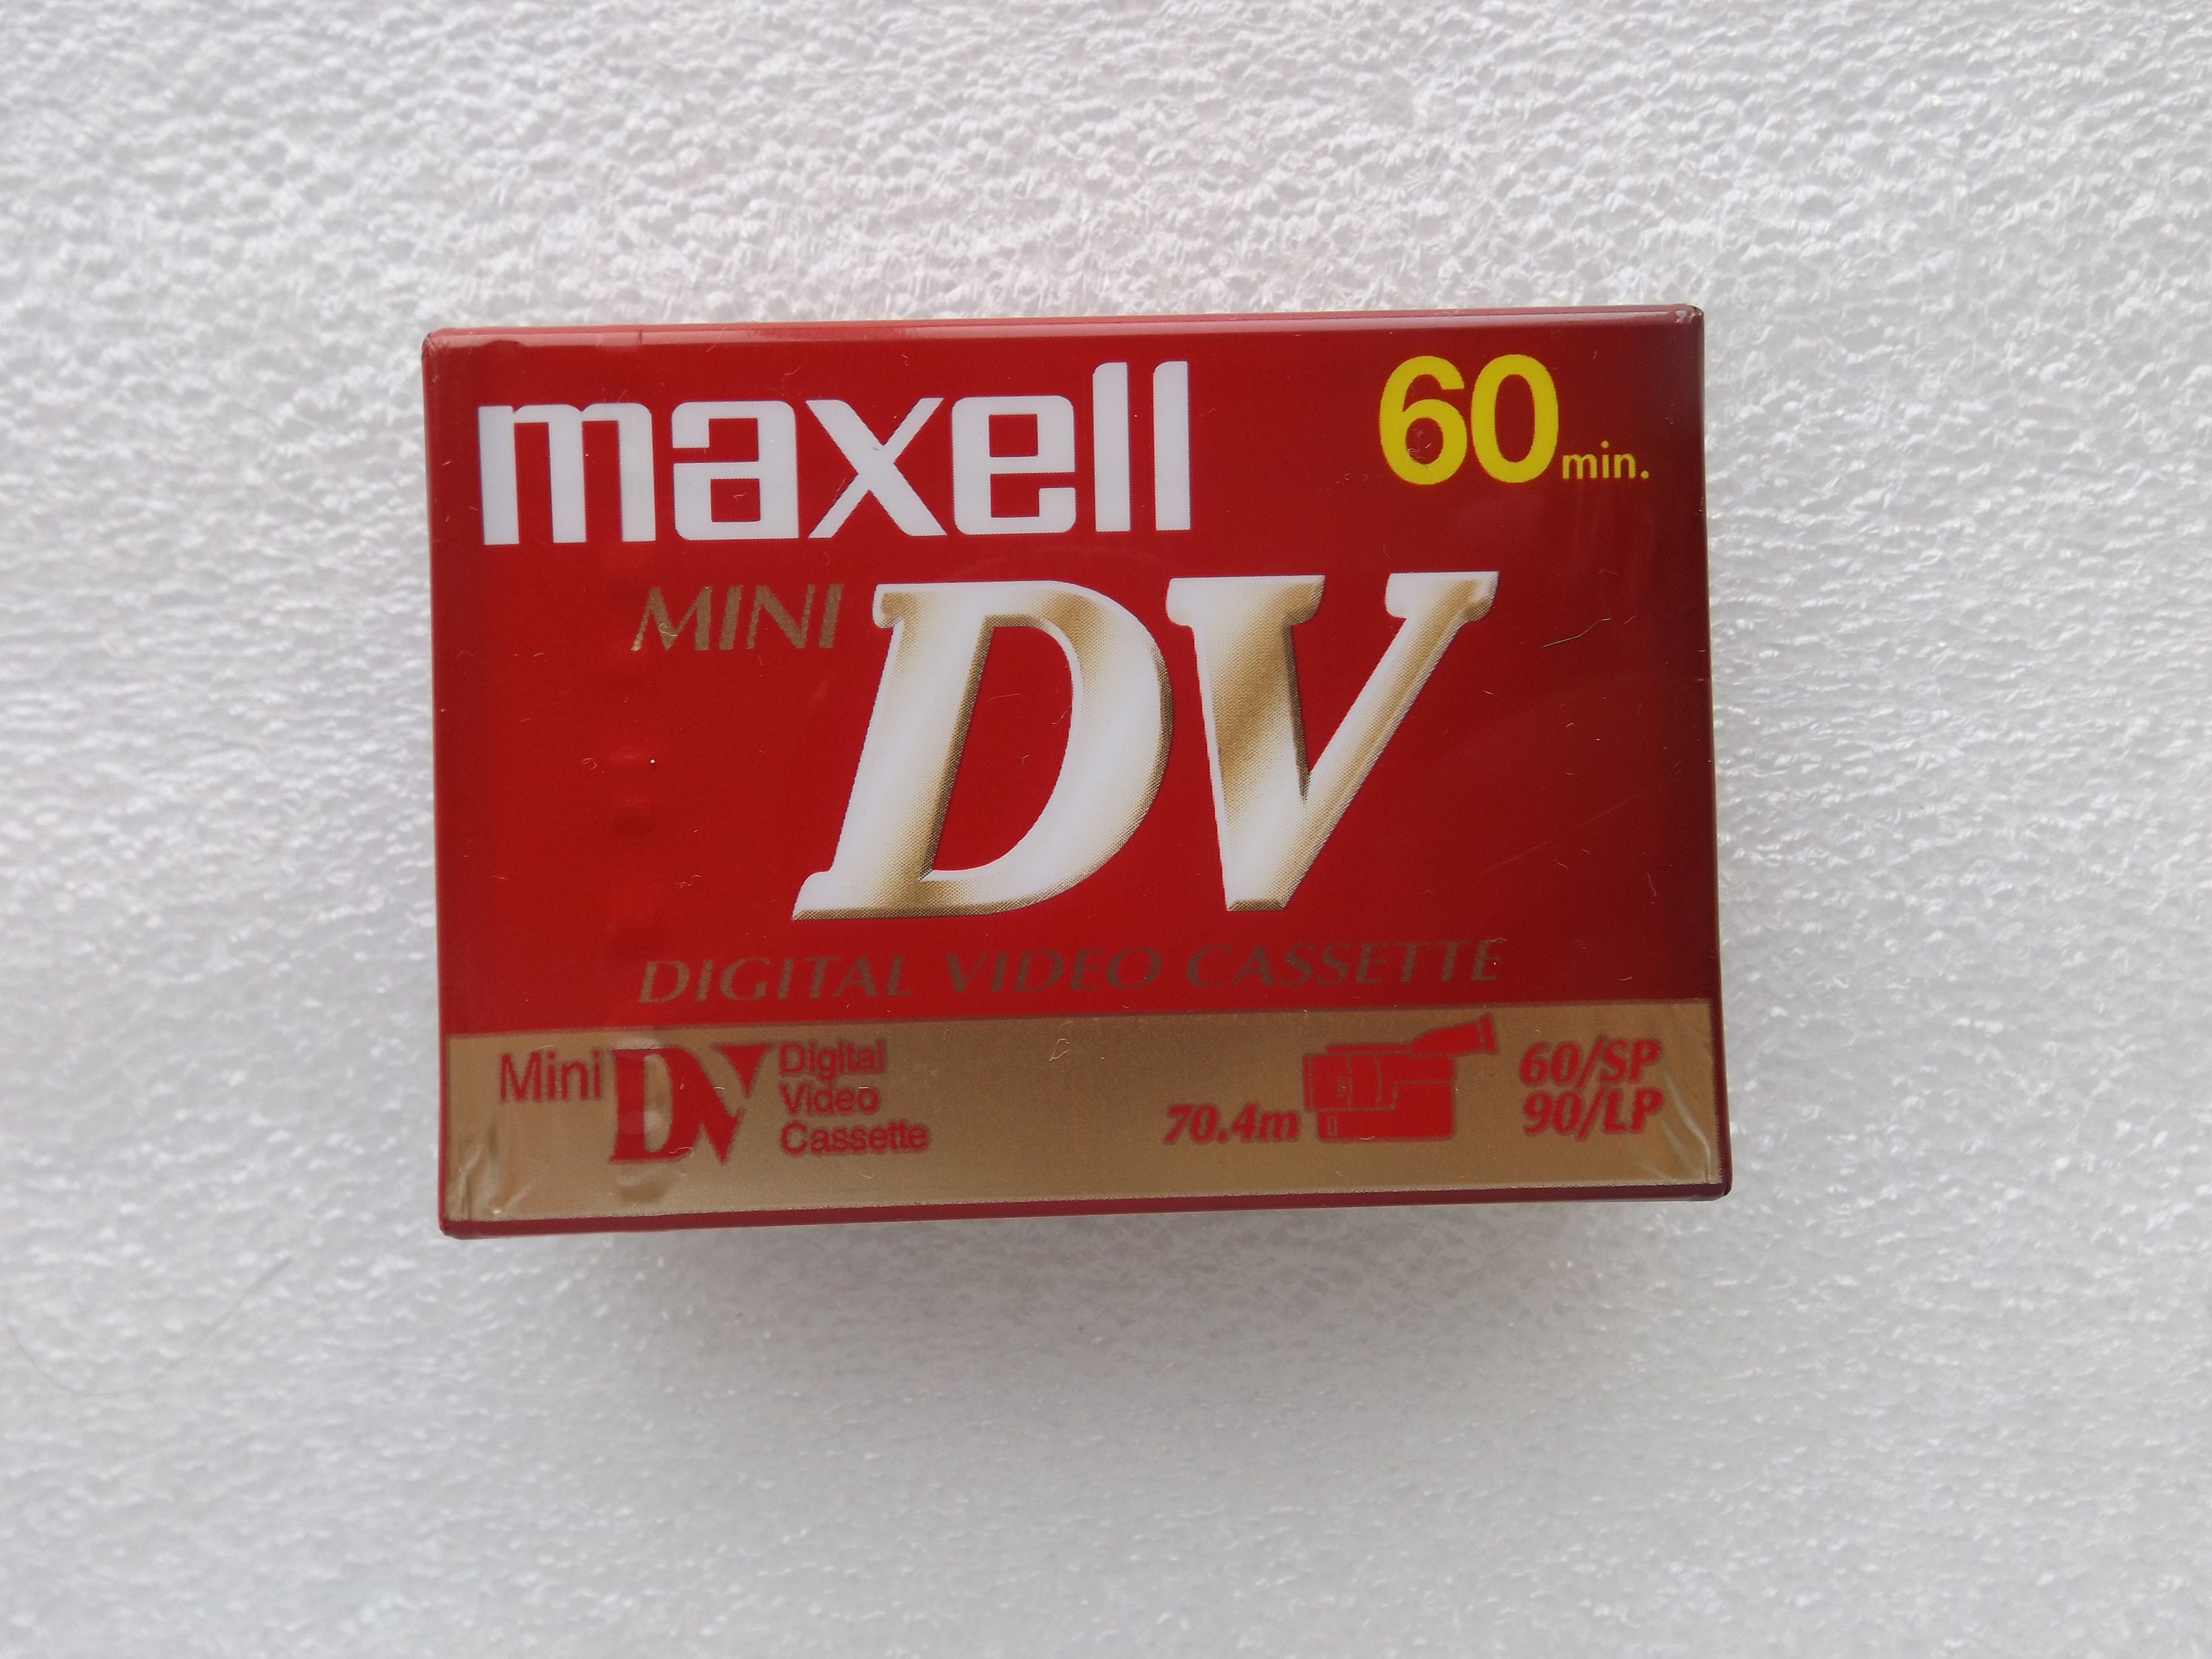 Maxell Mini DV Digital Video Cassette, Mini DV Cassette Tape Maxell DVM60SE  for Camcorder, Made in Japan NEW, Sealed, Free Shipping 